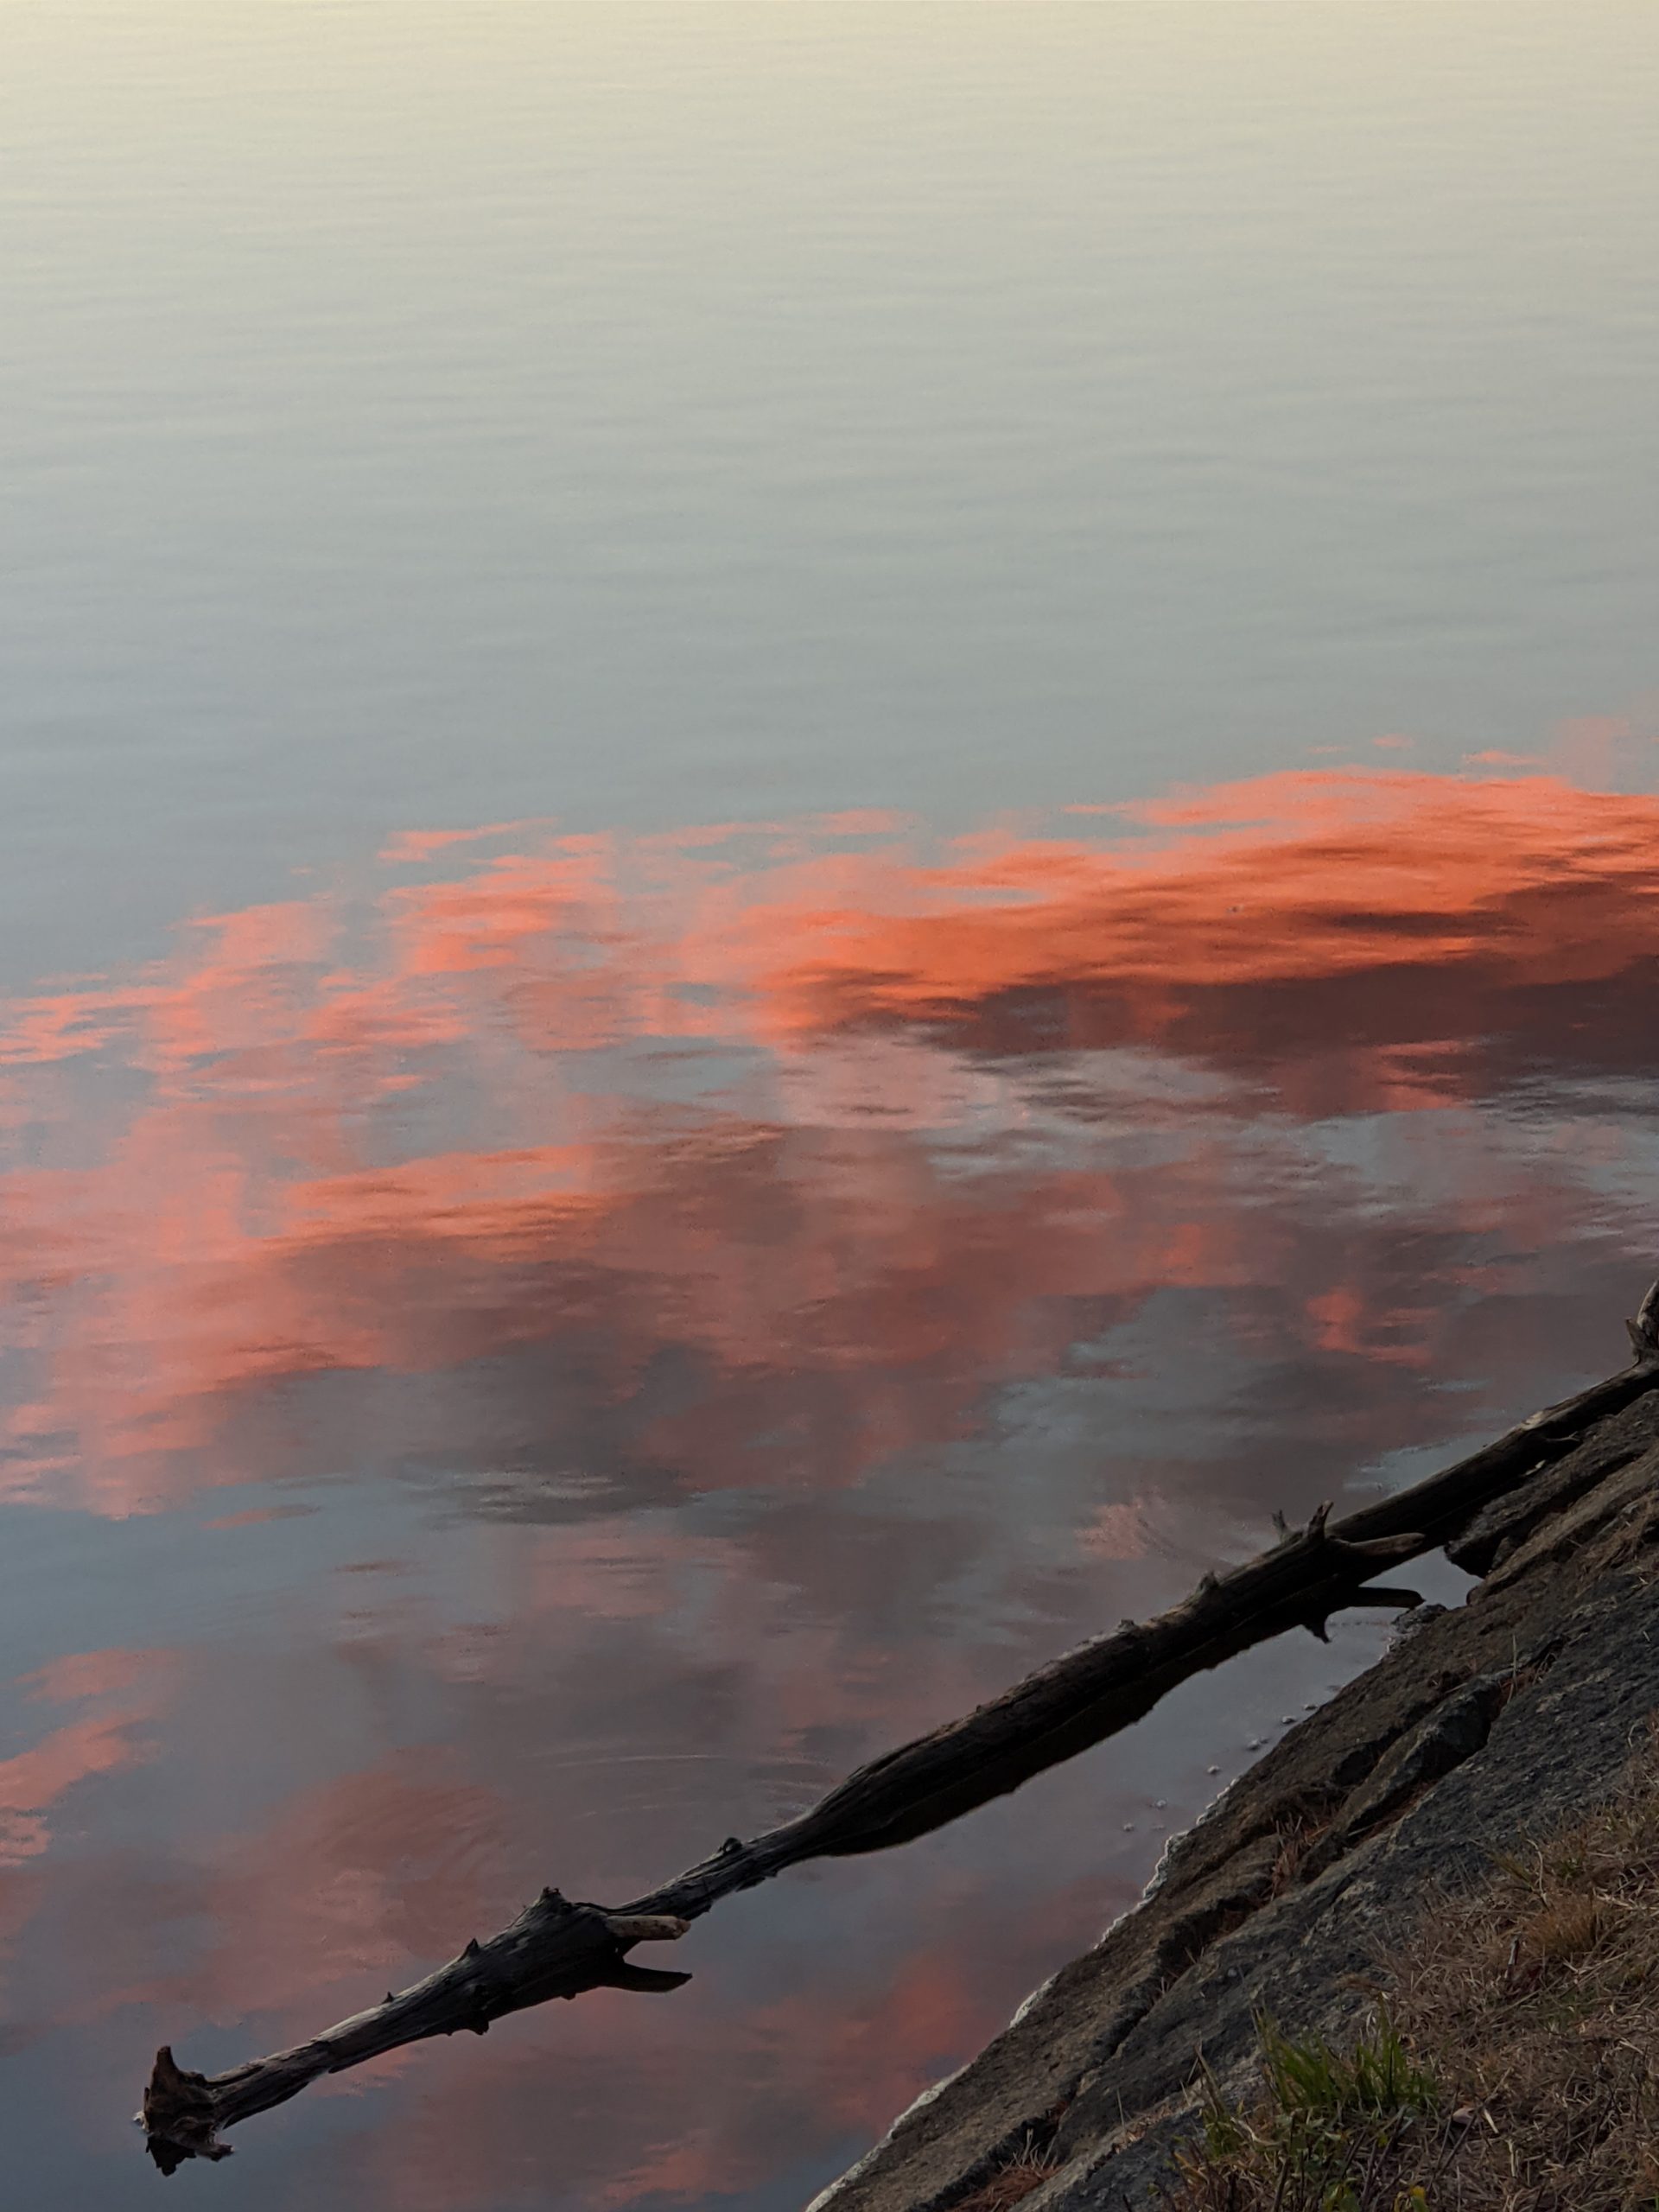 Sunset reflection & floating log - Ashland Reservoir - Ddecember 2020